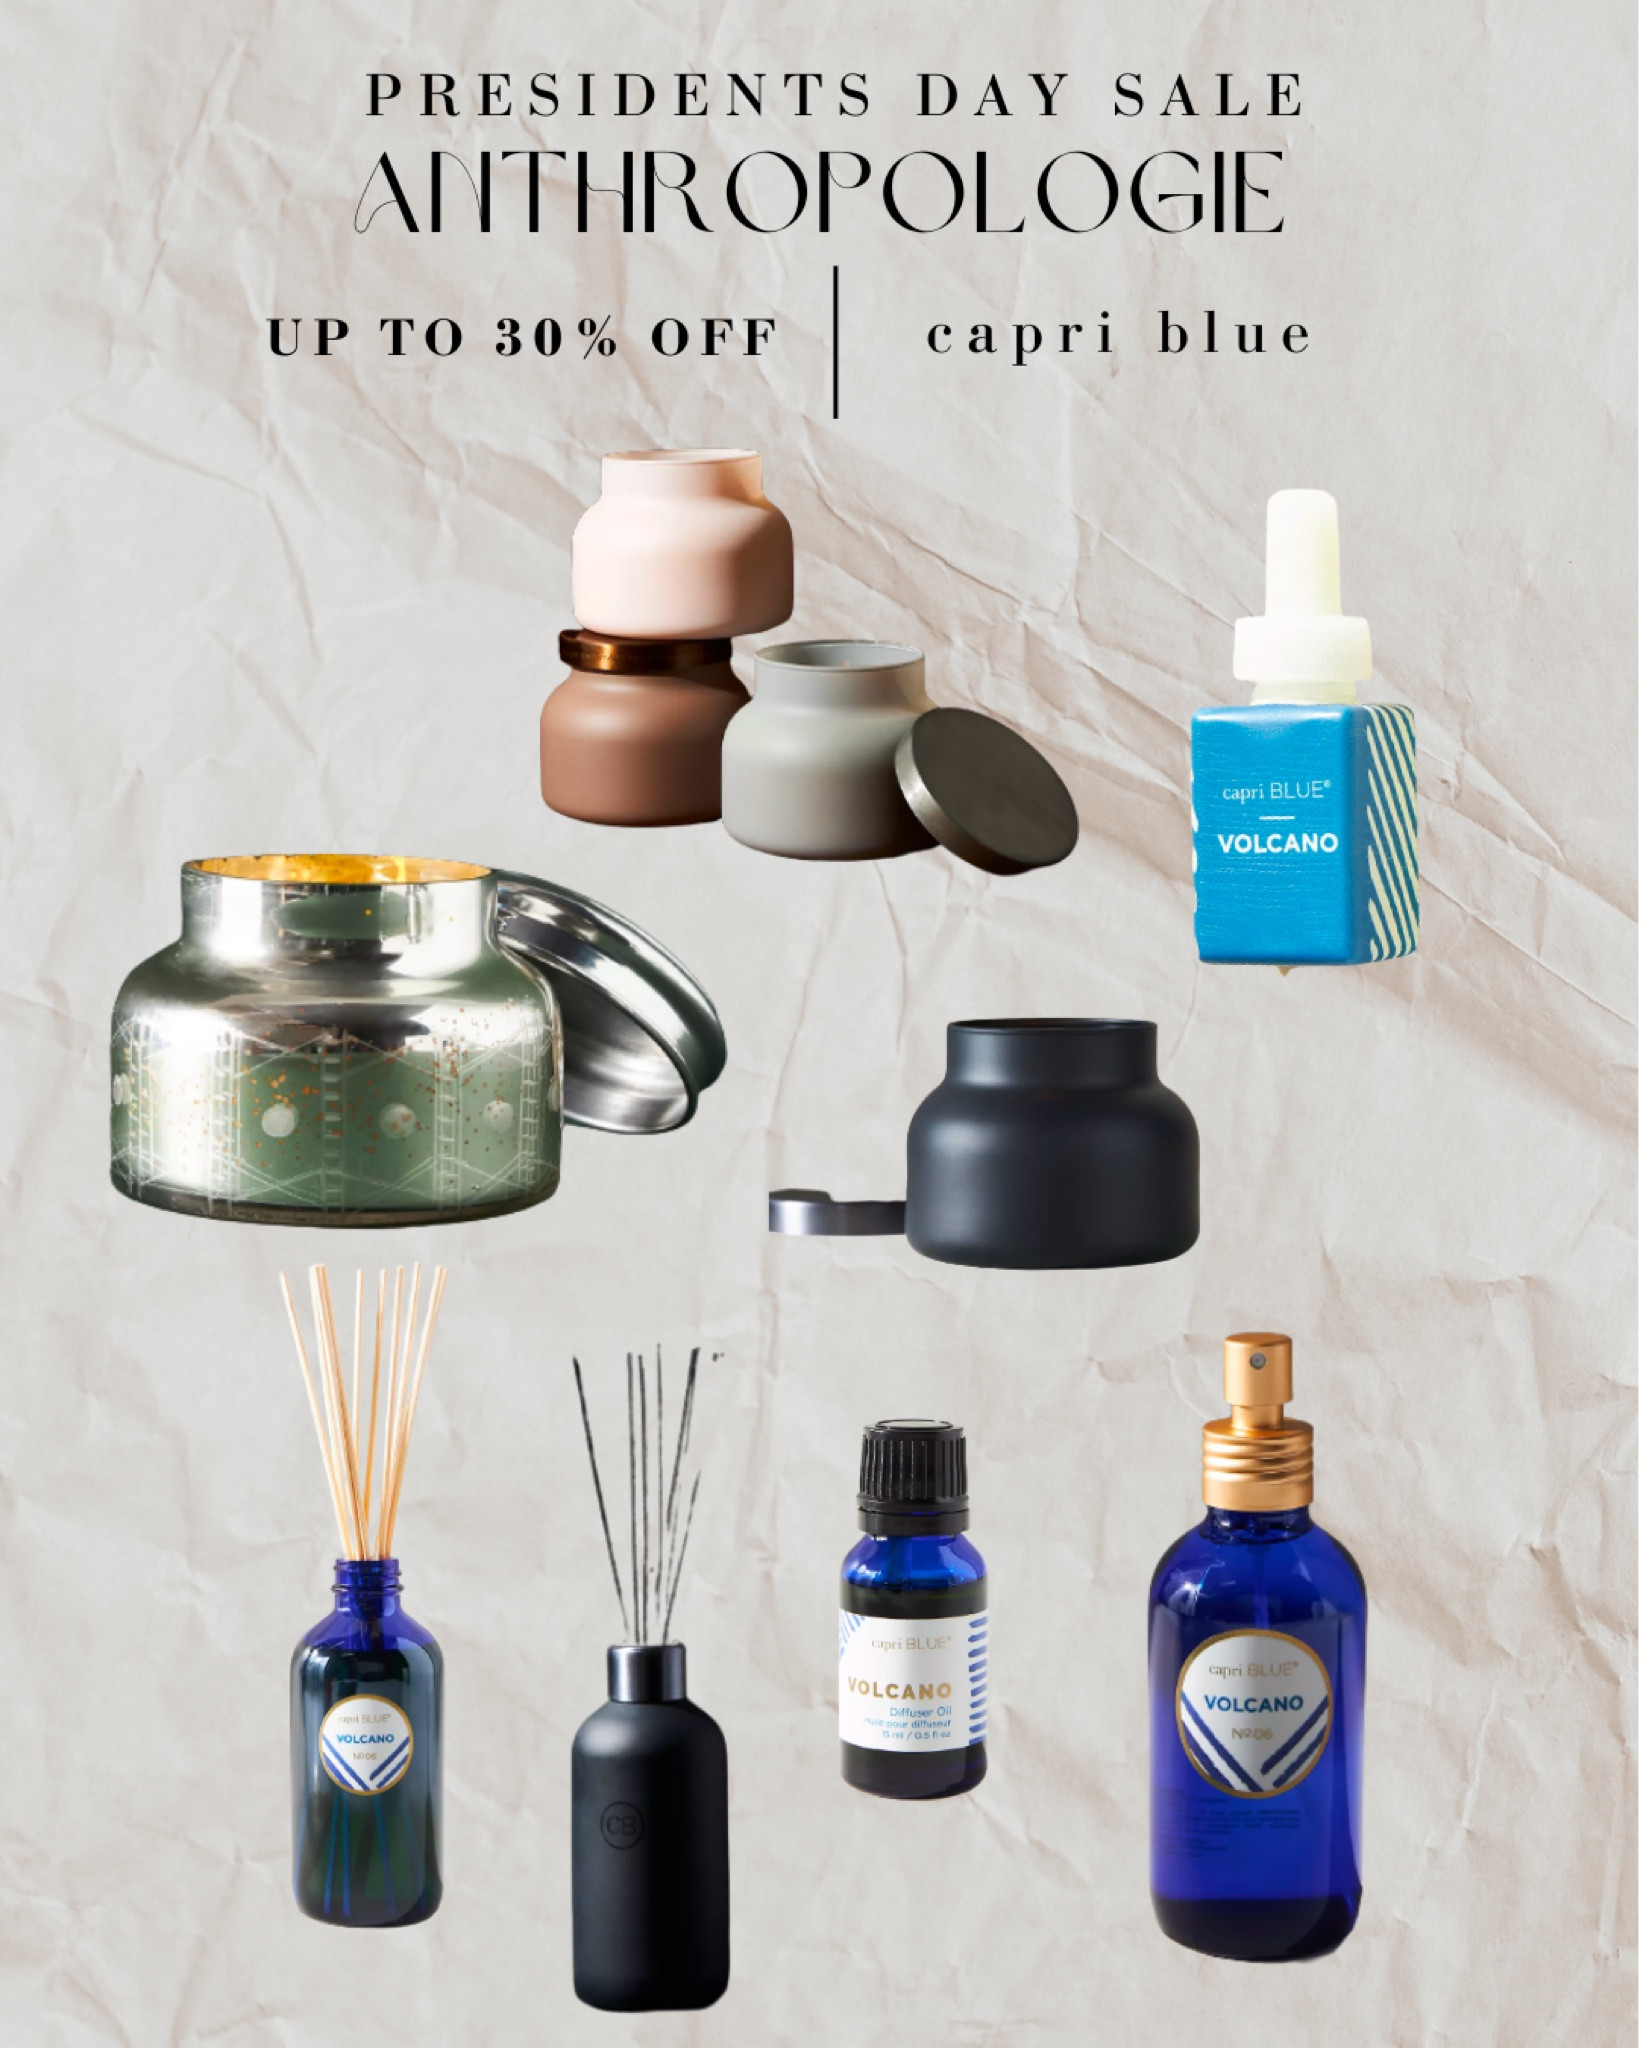 Capri Blue Diffuser Oil curated on LTK